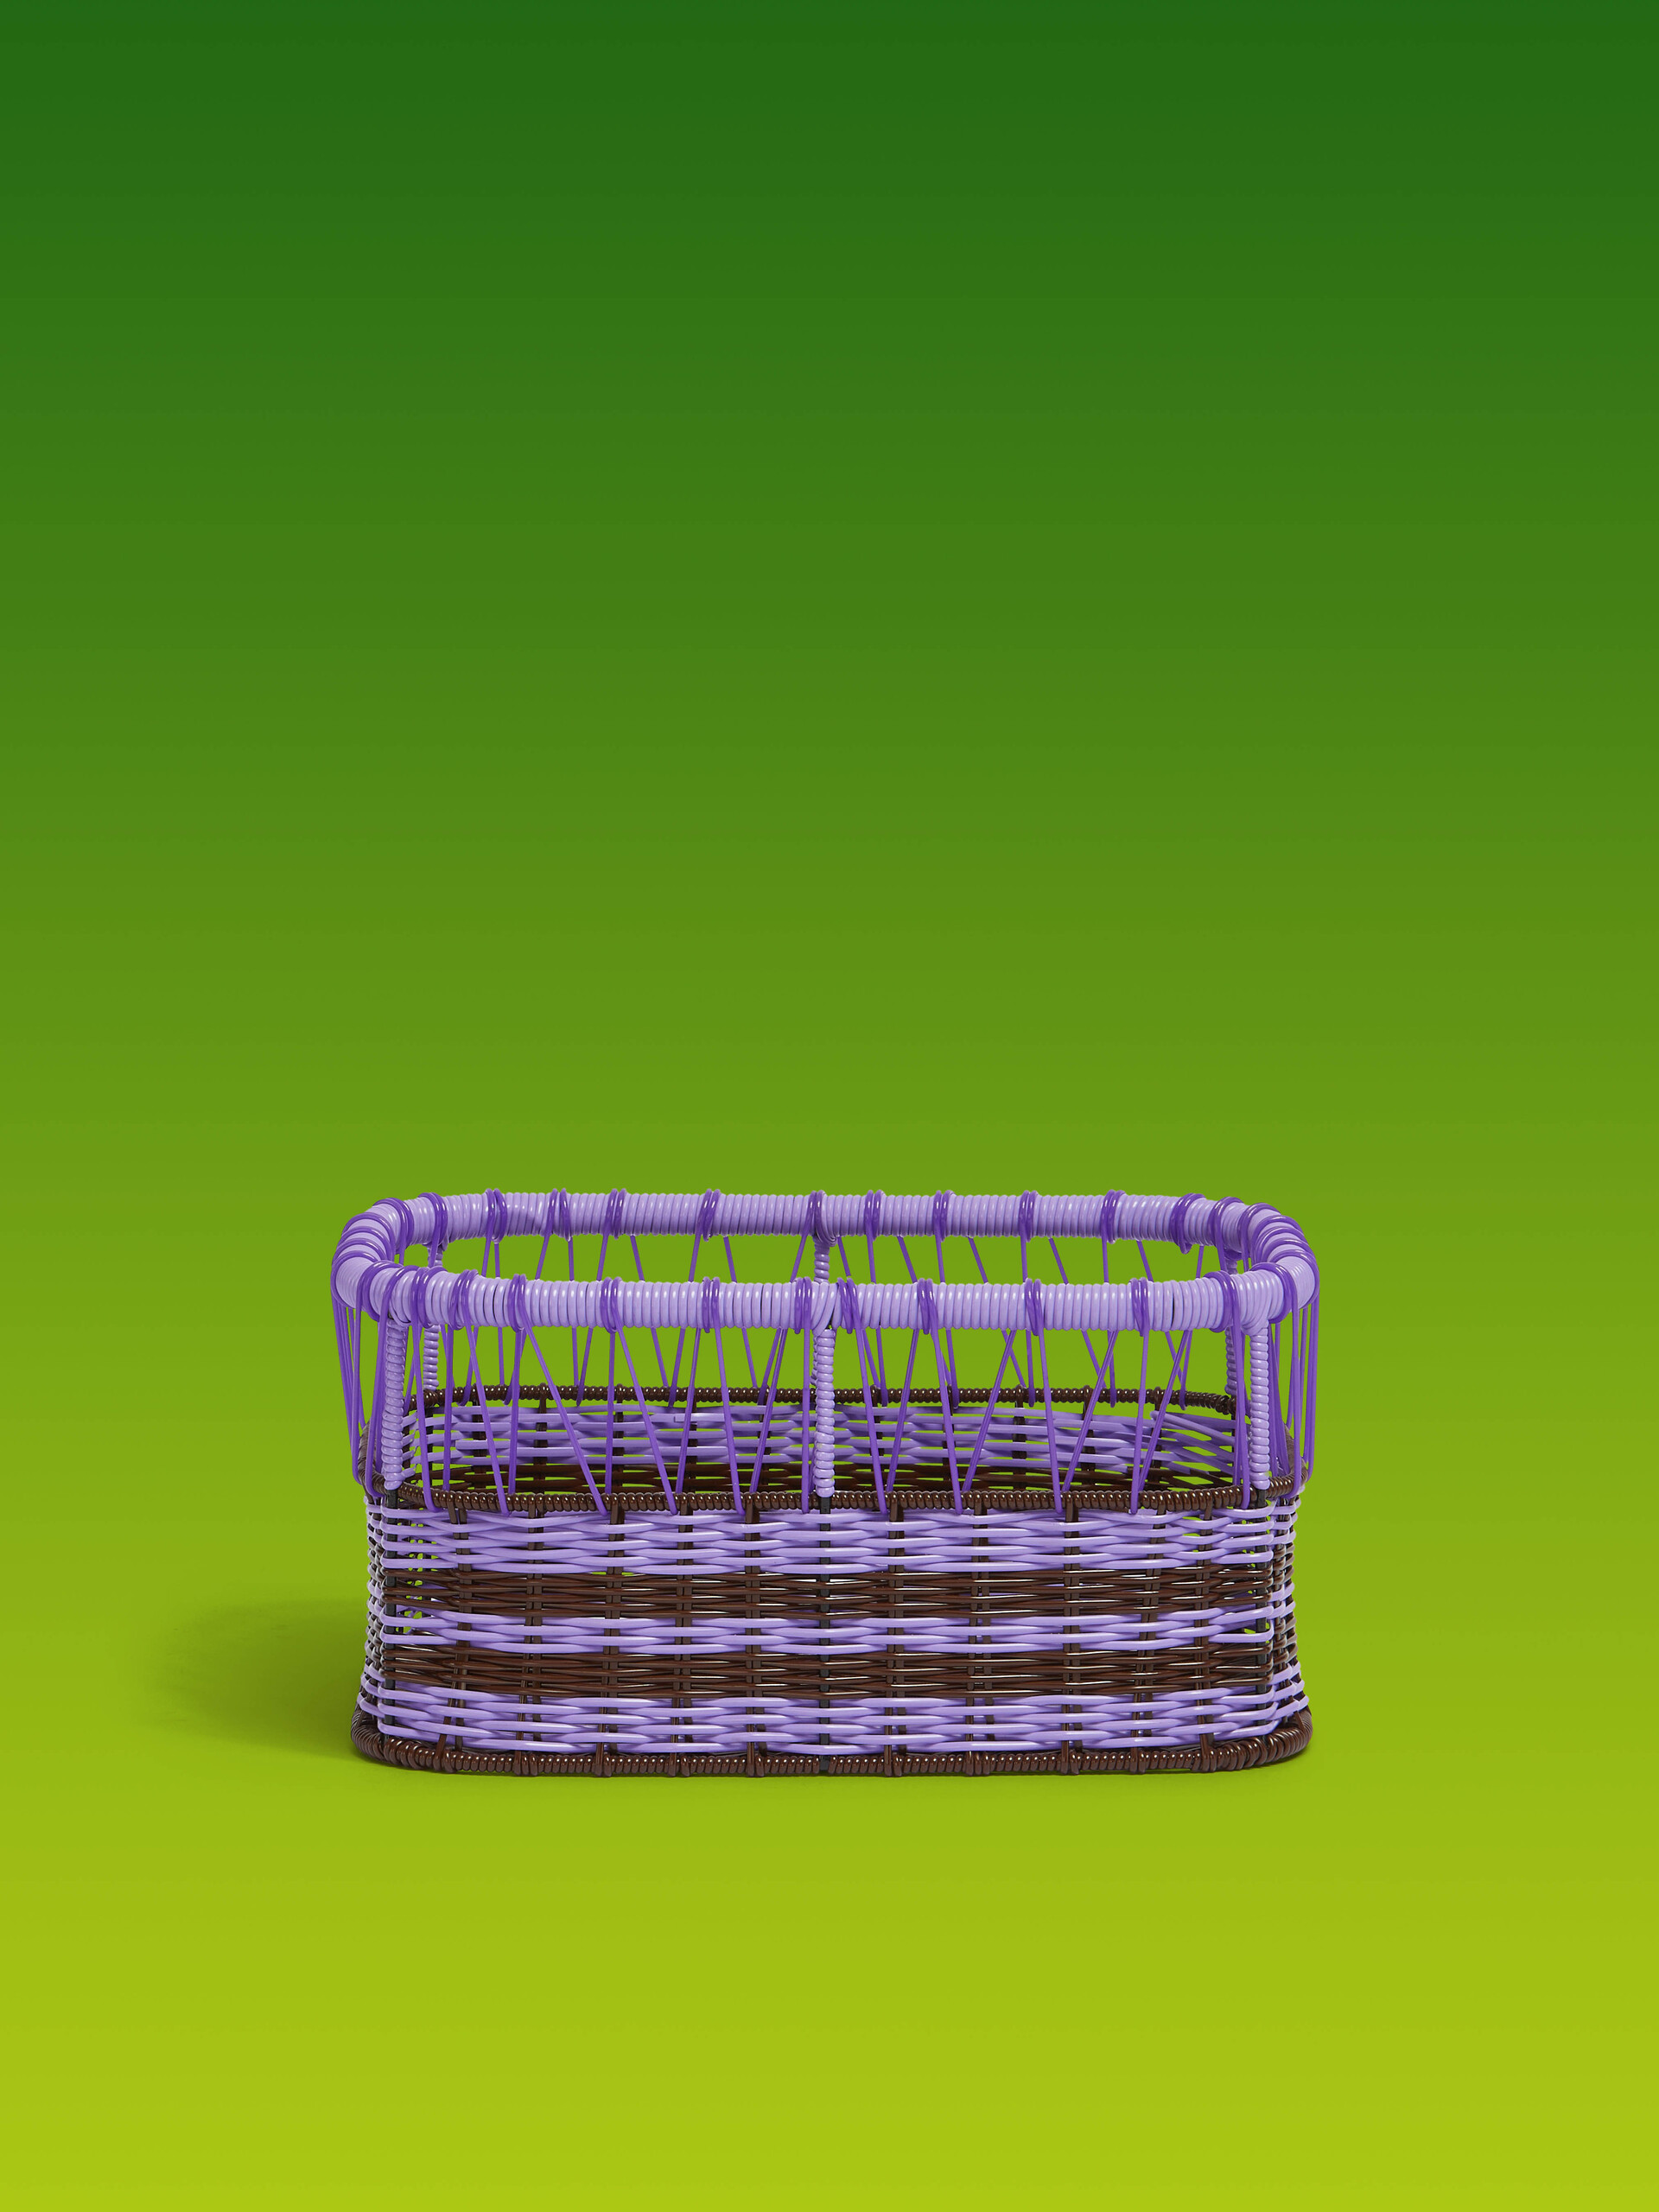 Lilac Marni Market oblong storage basket - Furniture - Image 1